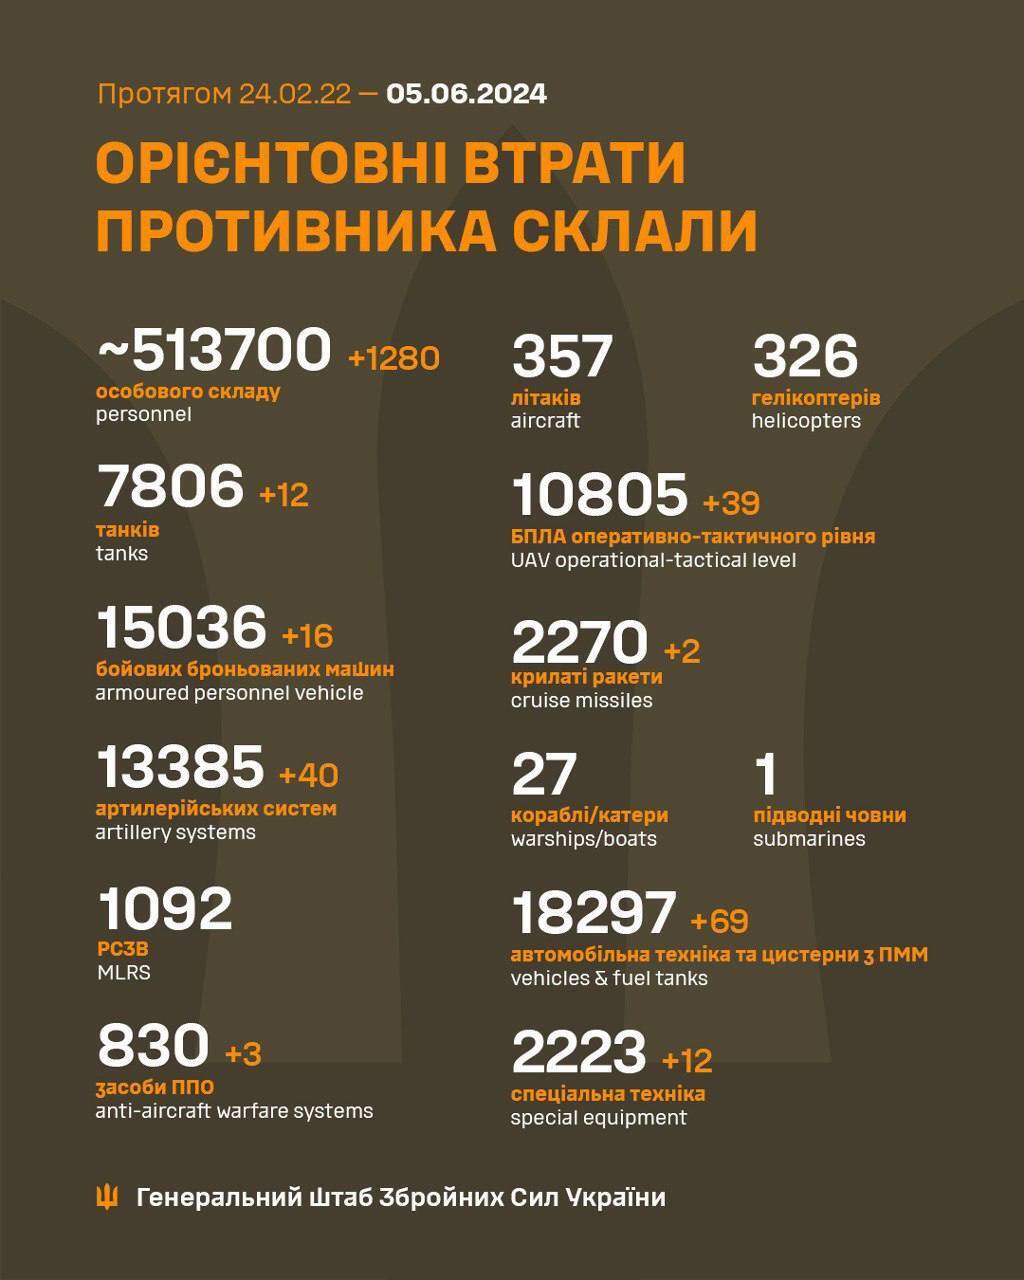 Минус 1280 российских оккупантов и 40 артсистем: Генштаб обнародовал обновленные данные по потерям РФ